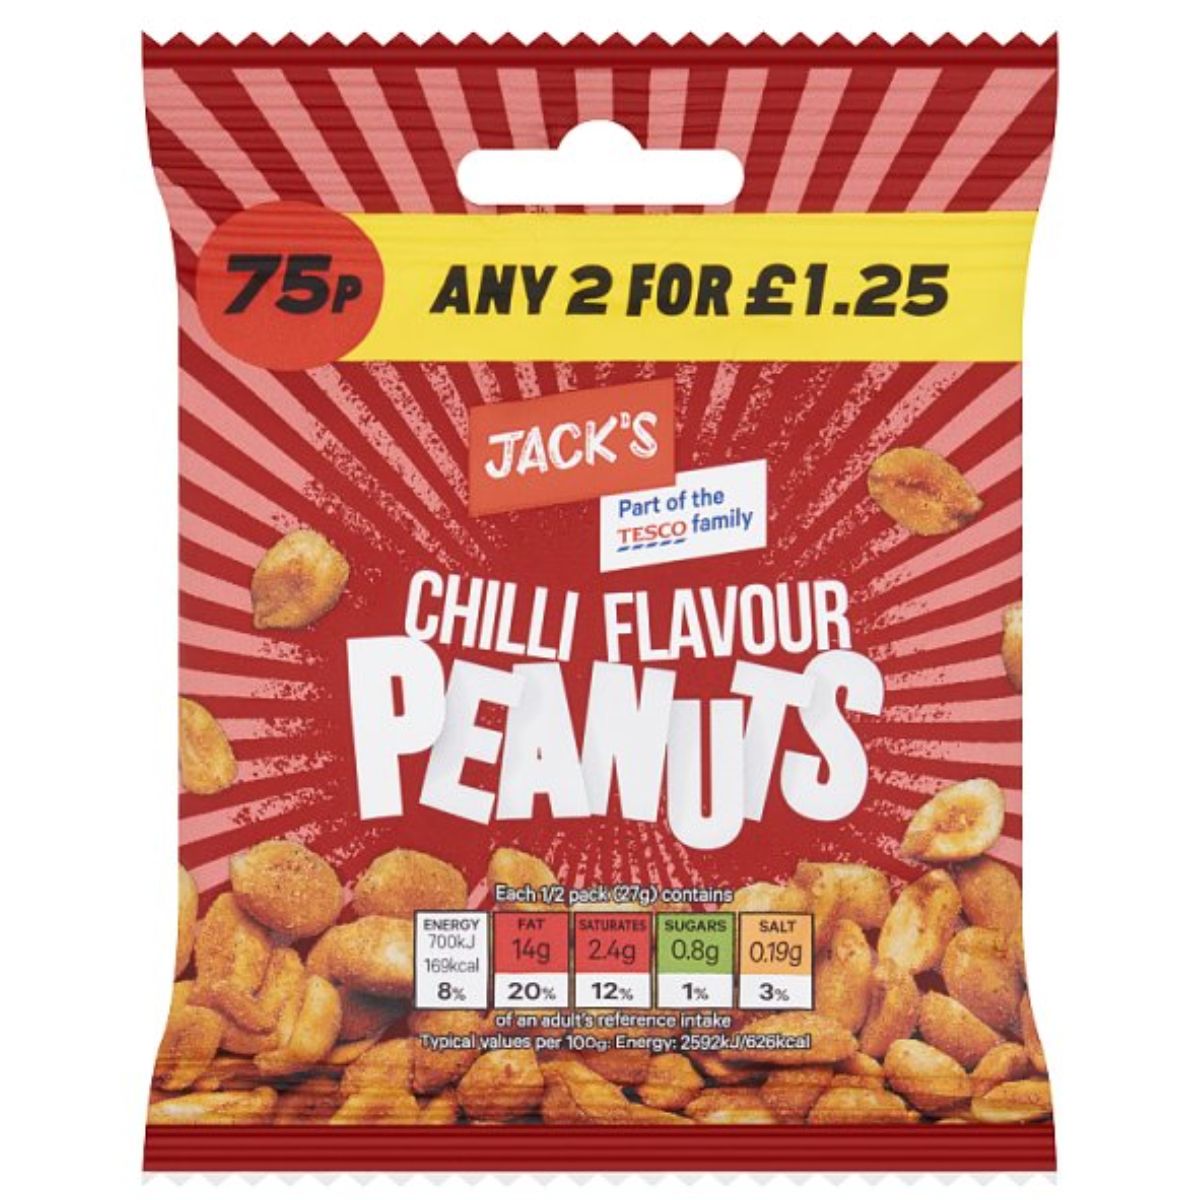 Jacks - Chilli Flavour Peanuts - 55g.